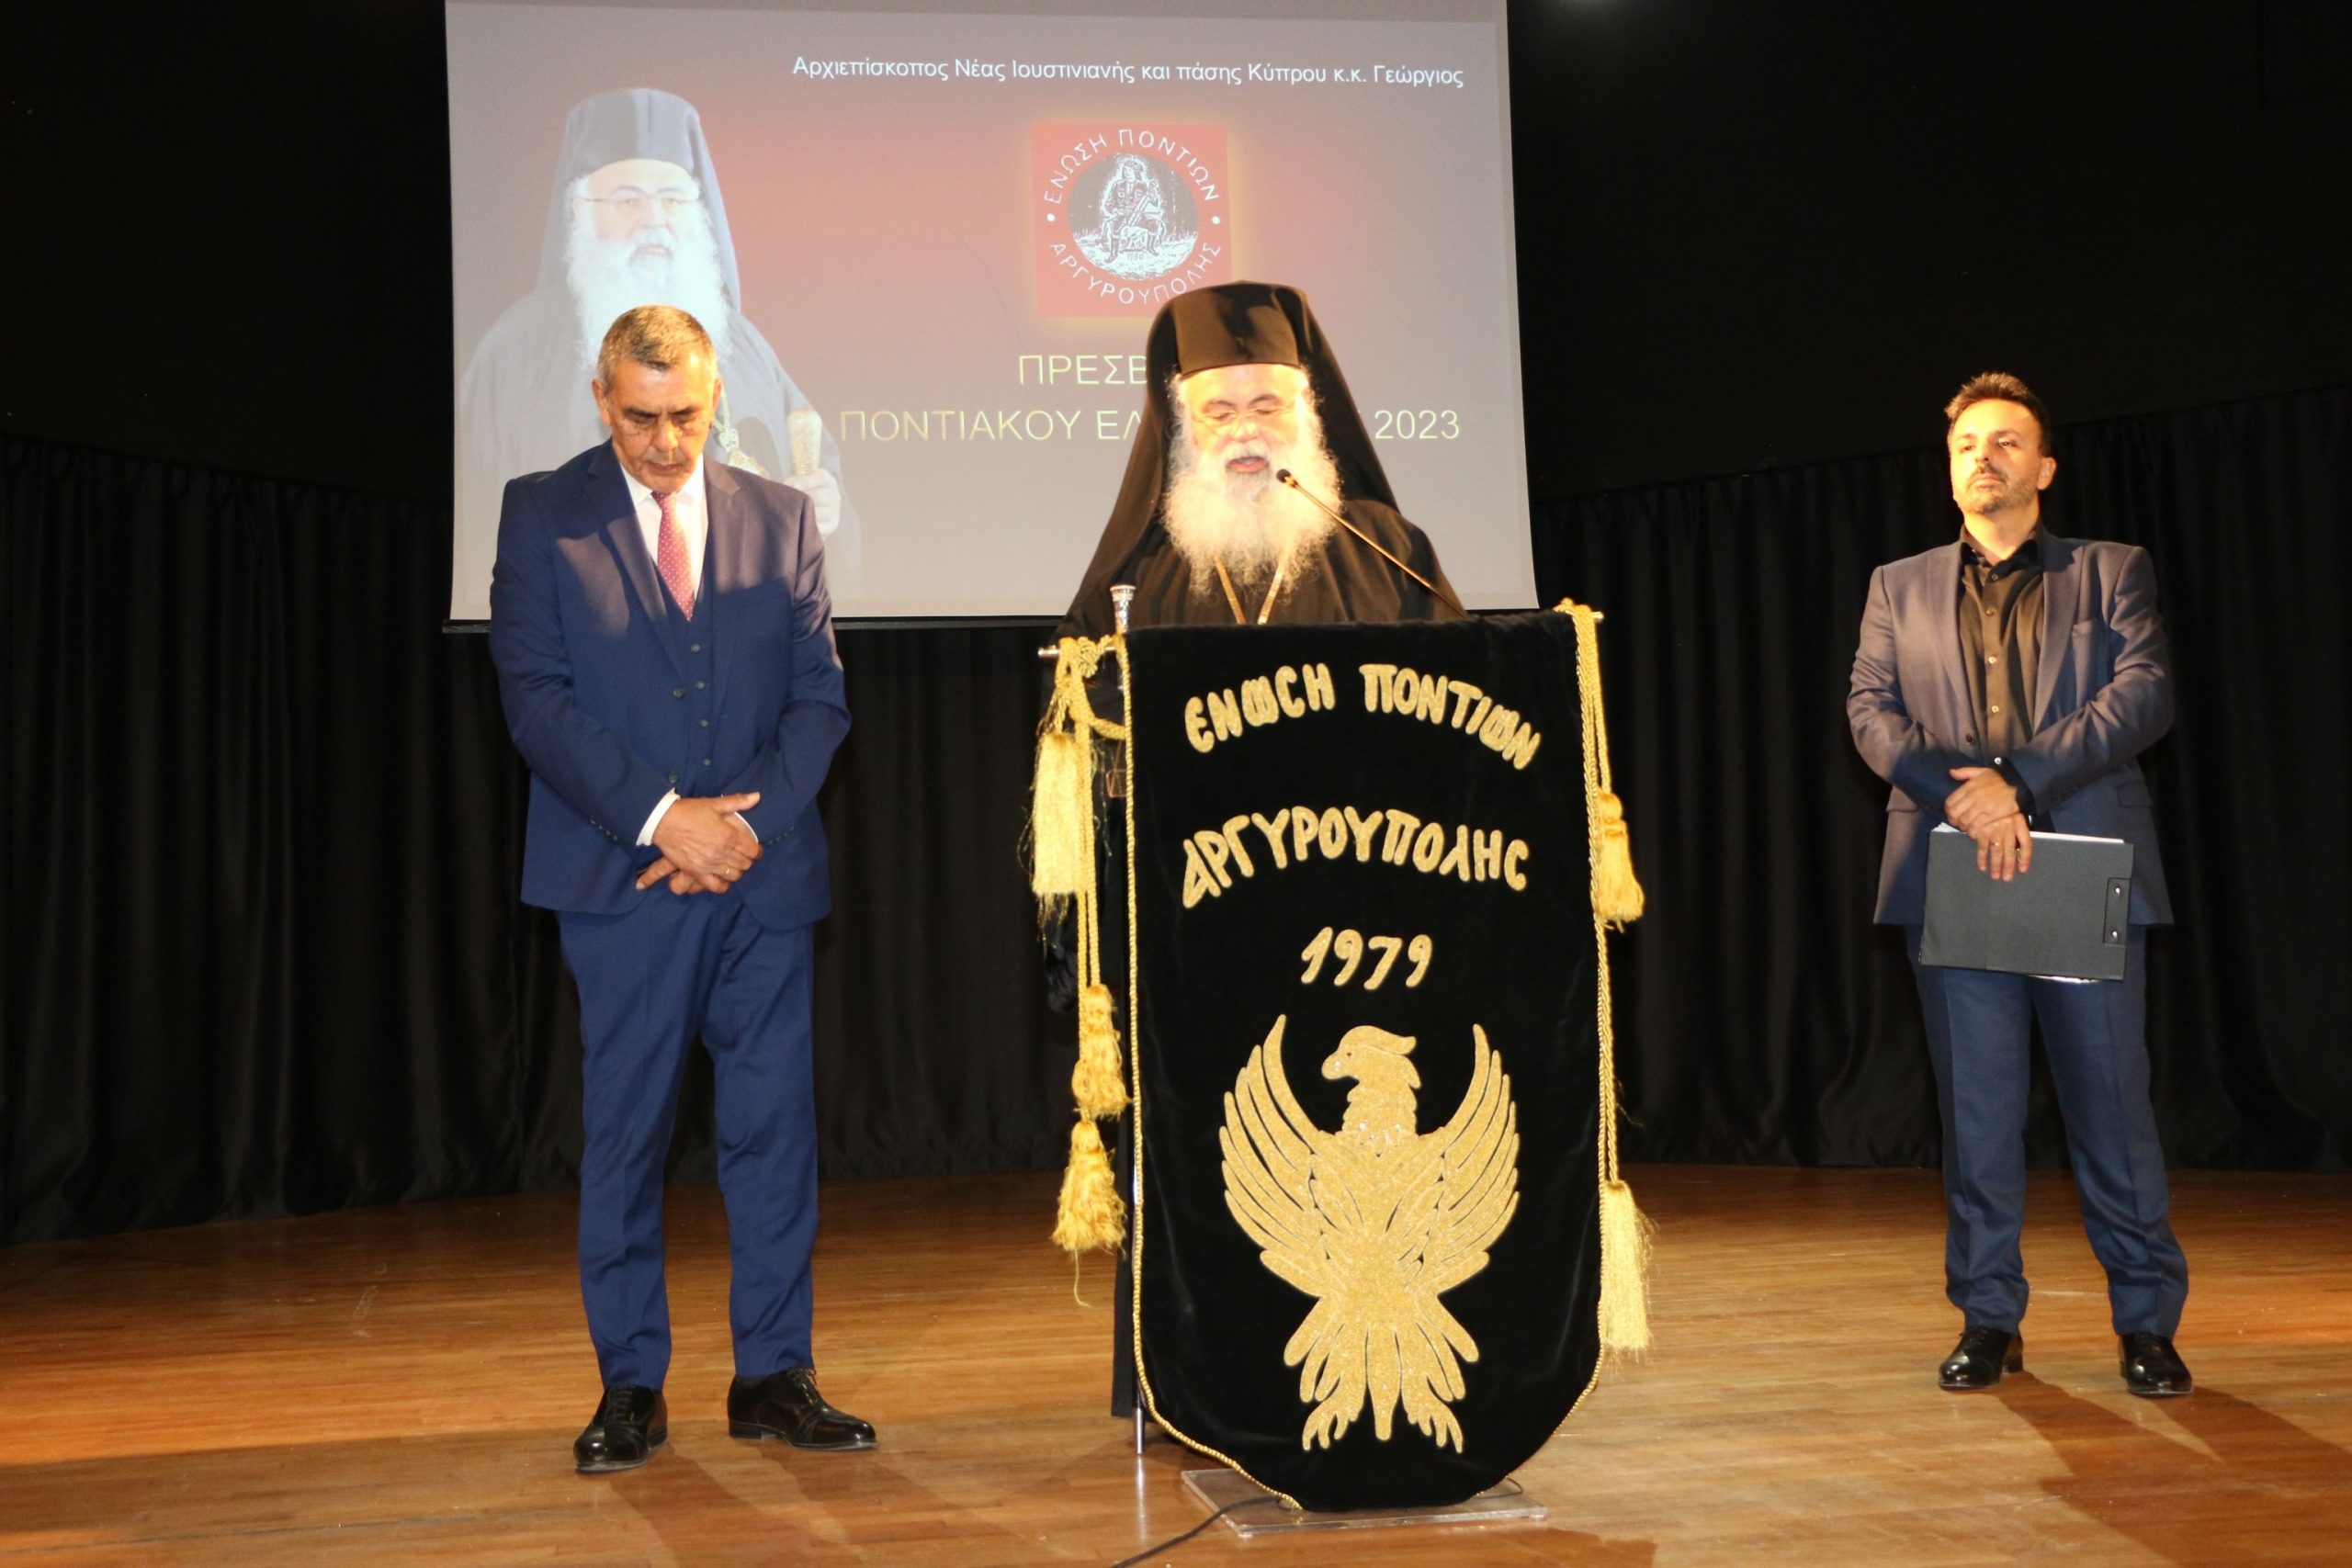 Πρεσβευτές Ποντιακού Ελληνισμού! Η Ένωση Ποντίων Αργυρούπολης πρωτοπορεί εγκαινιάζοντας έναν νέο θεσμό